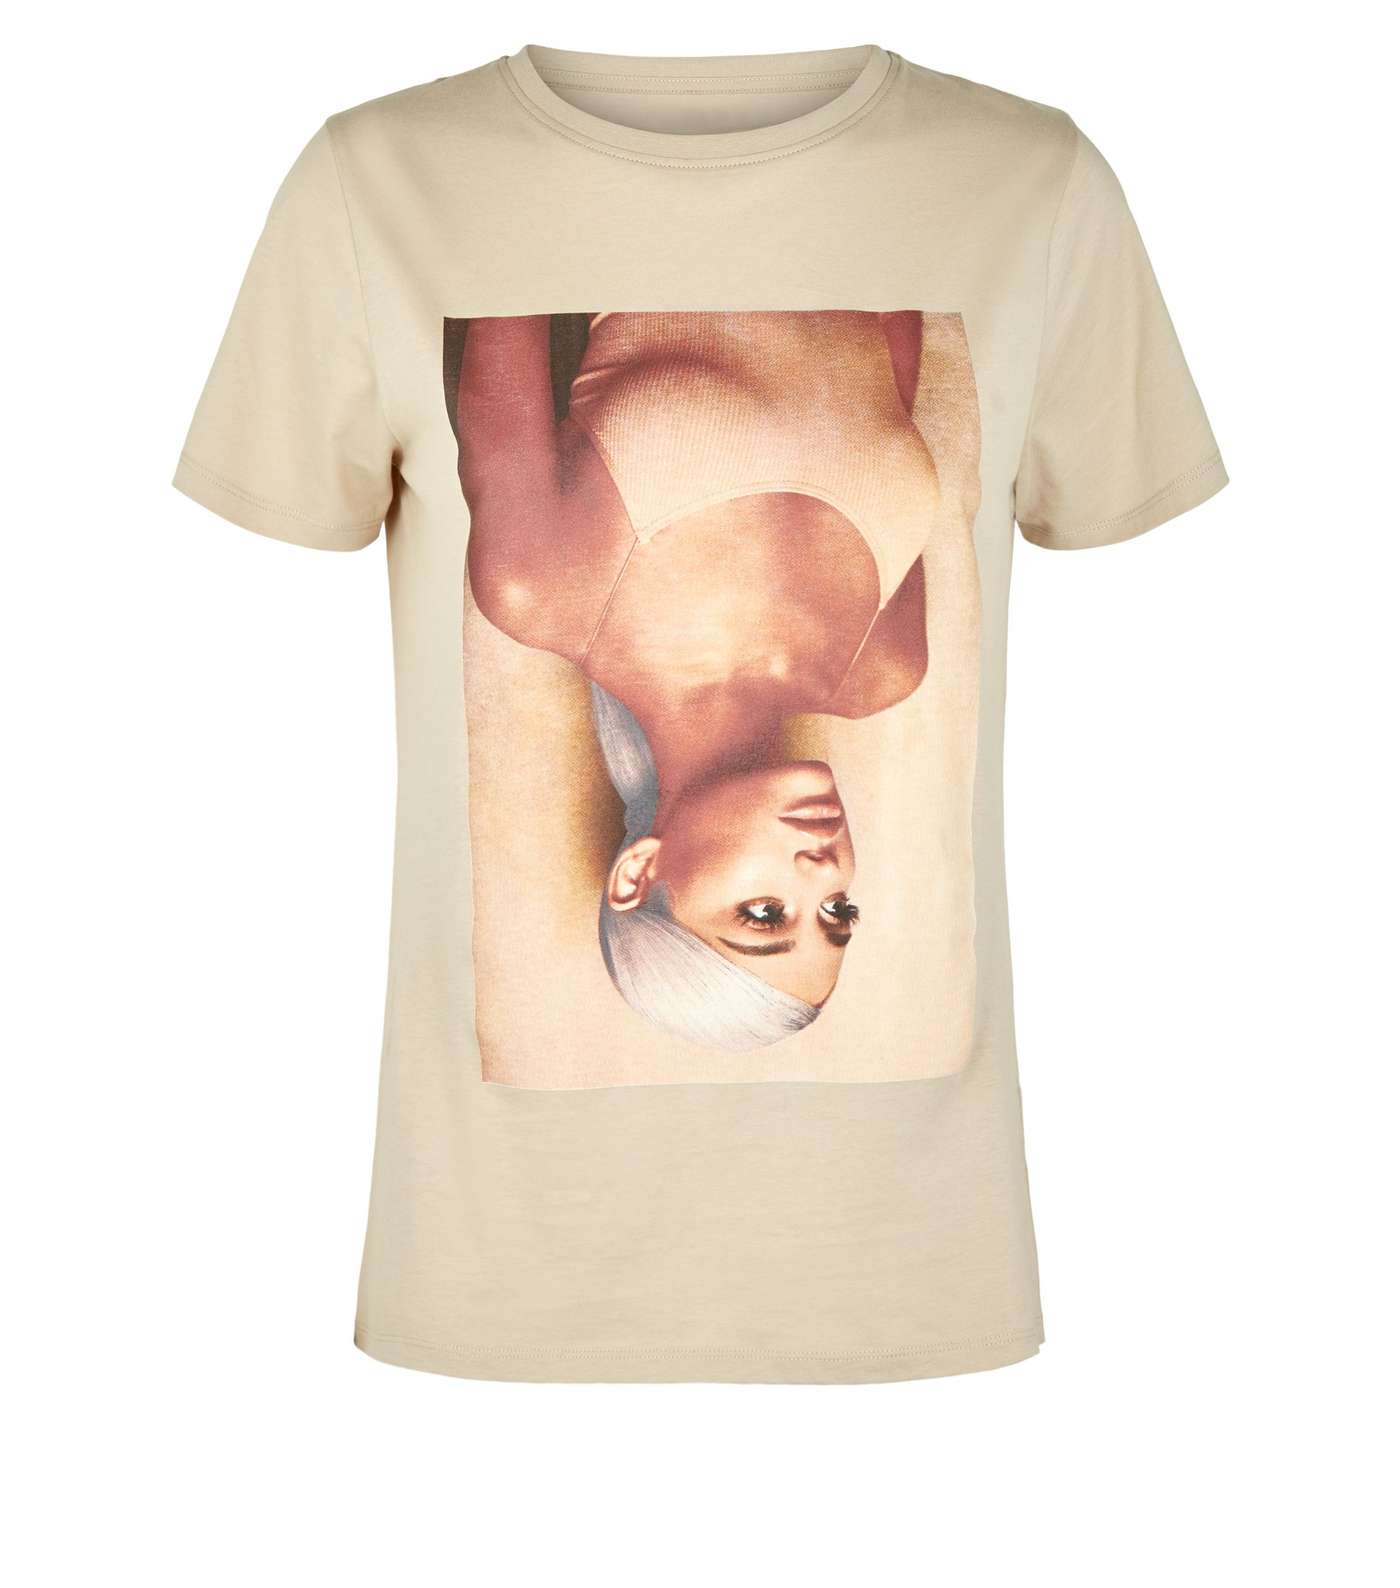 Stone Ariana Grande Sweetener Album T-Shirt Image 4